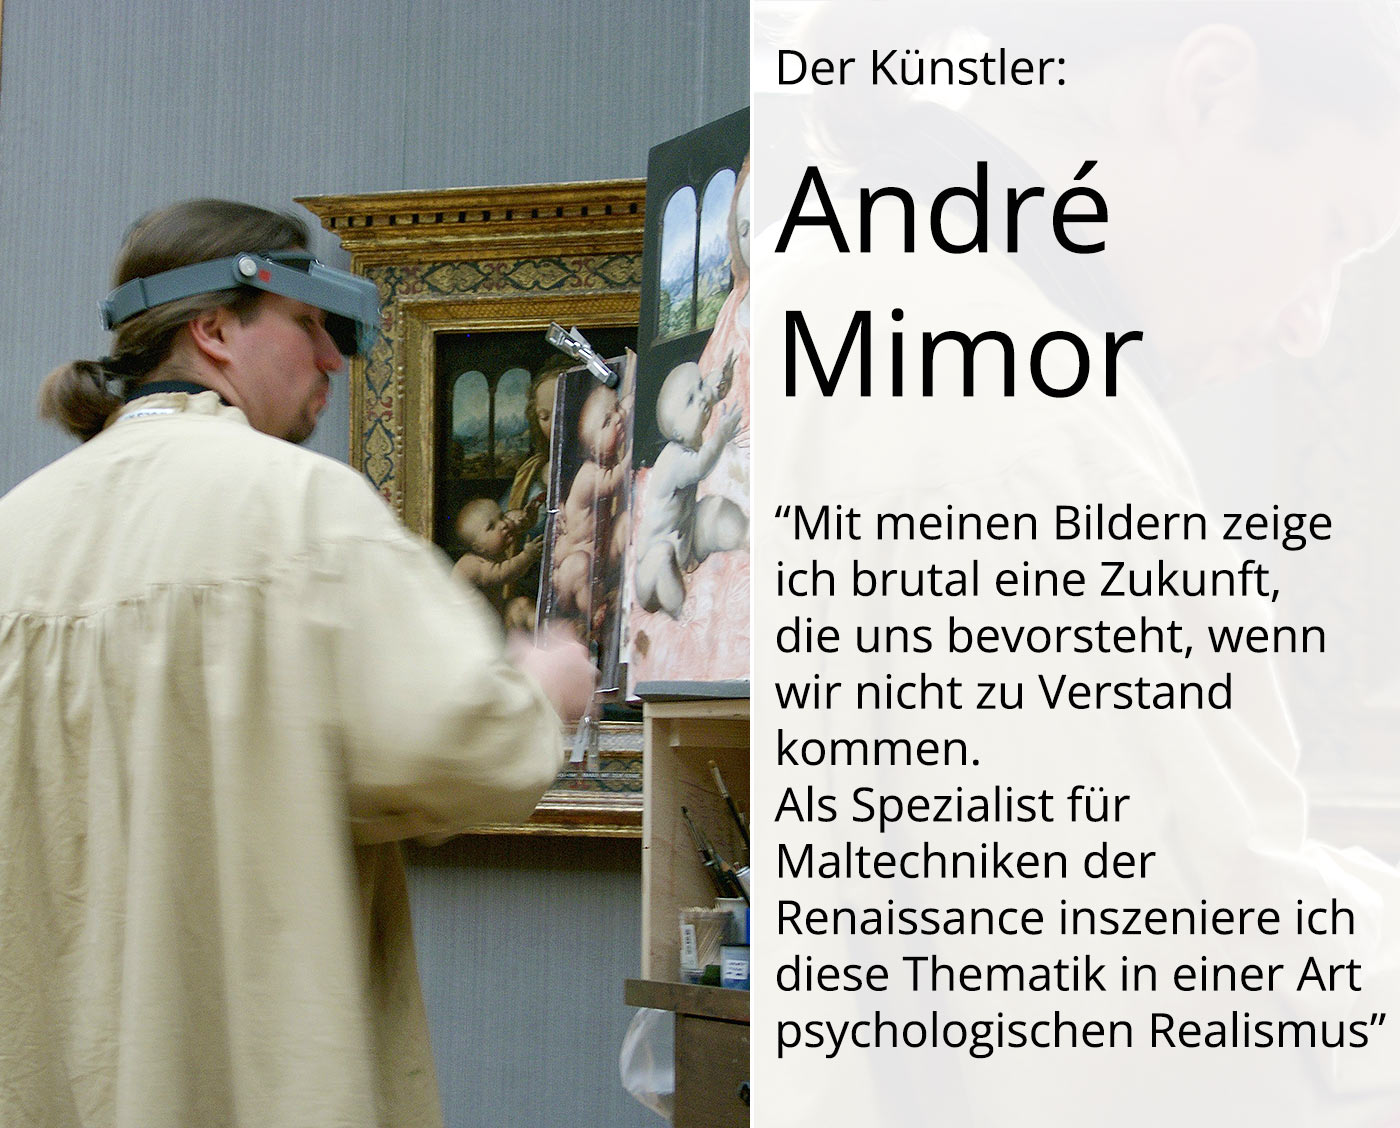 Großformat, psychologischer Realismus von André Mimor: "Blaue Schatten",Originalgemälde (